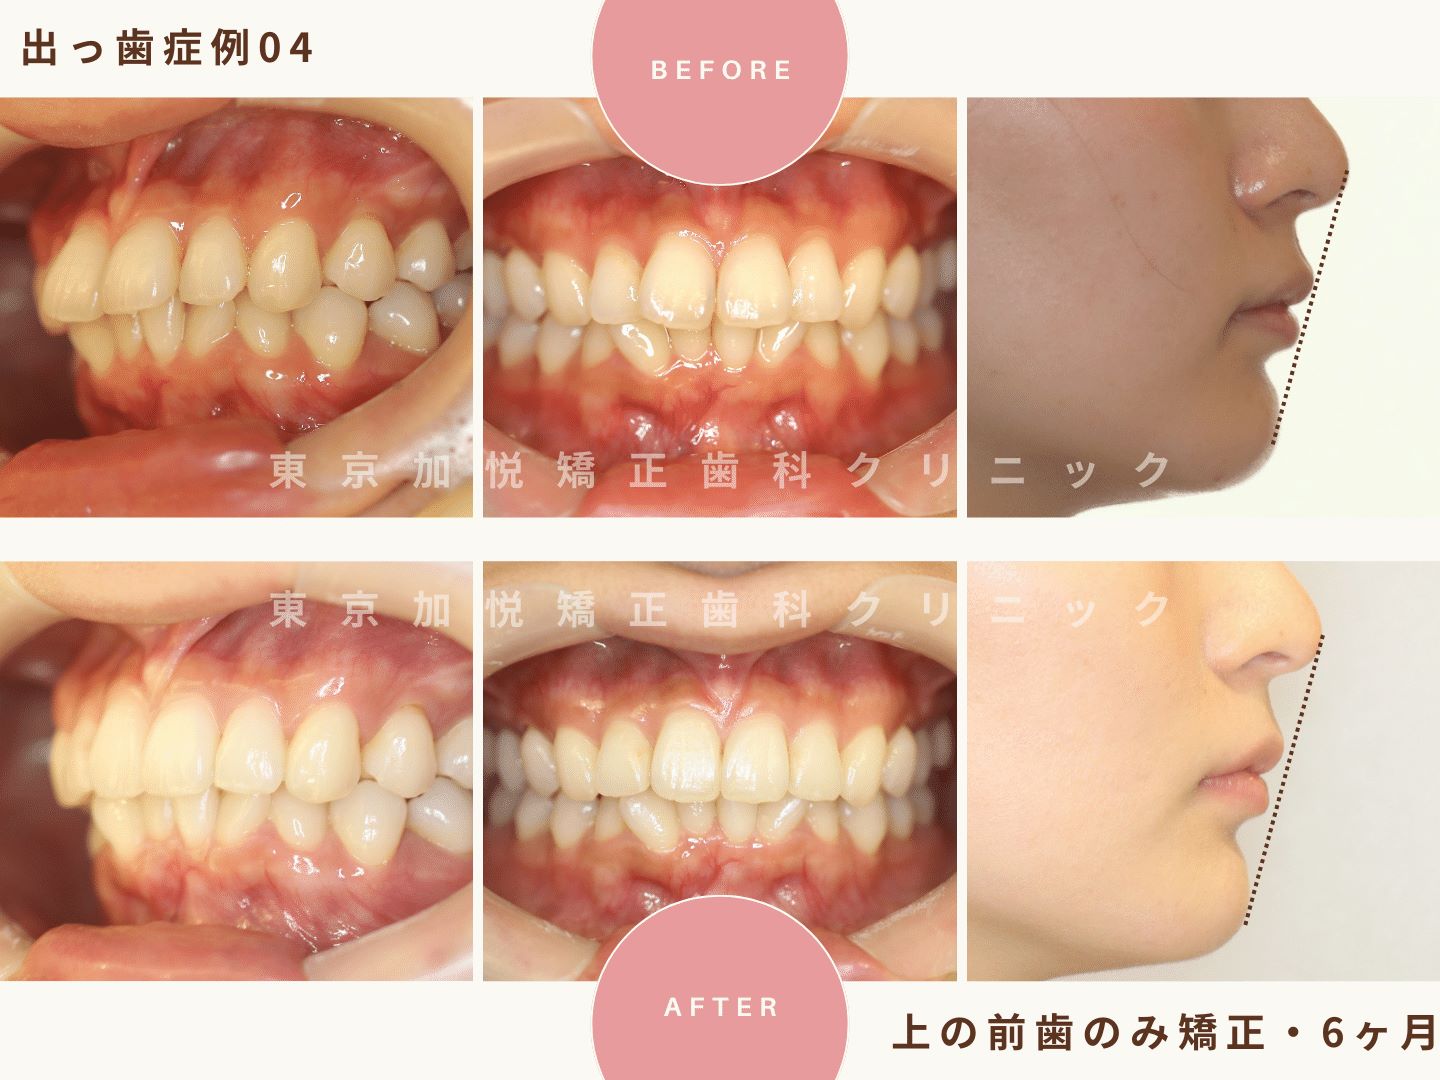 出っ歯矯正症例4、上の前歯だけの矯正で出っ歯を治療した23才女性